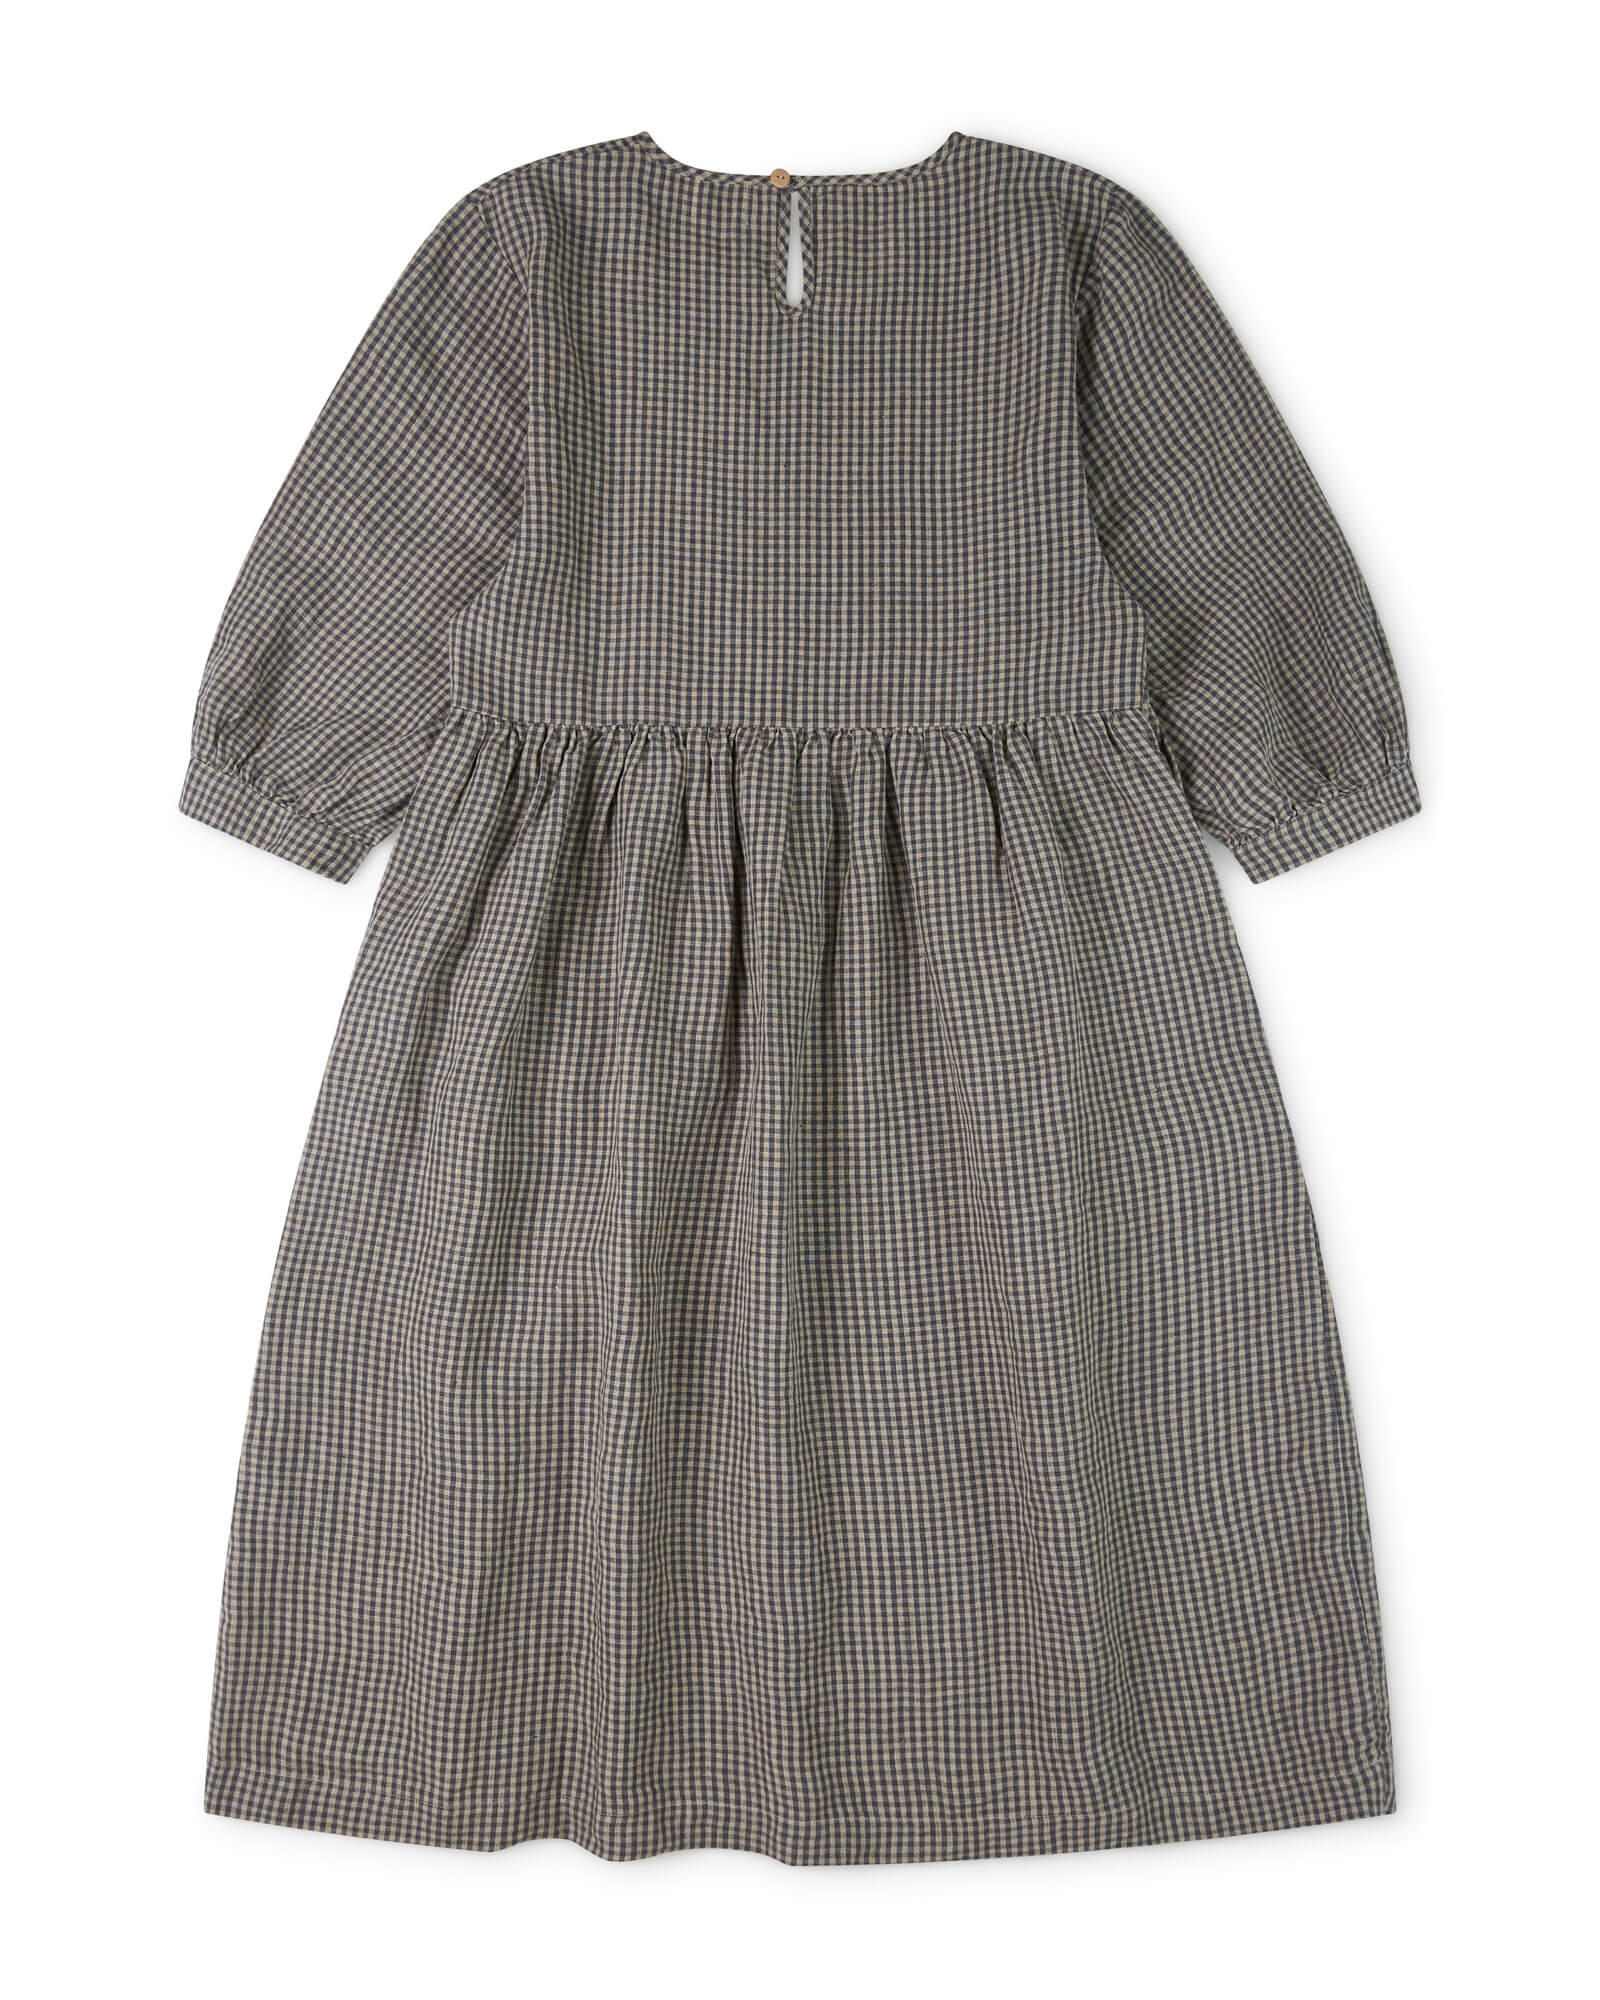 Gray linen vichy dress from Matona